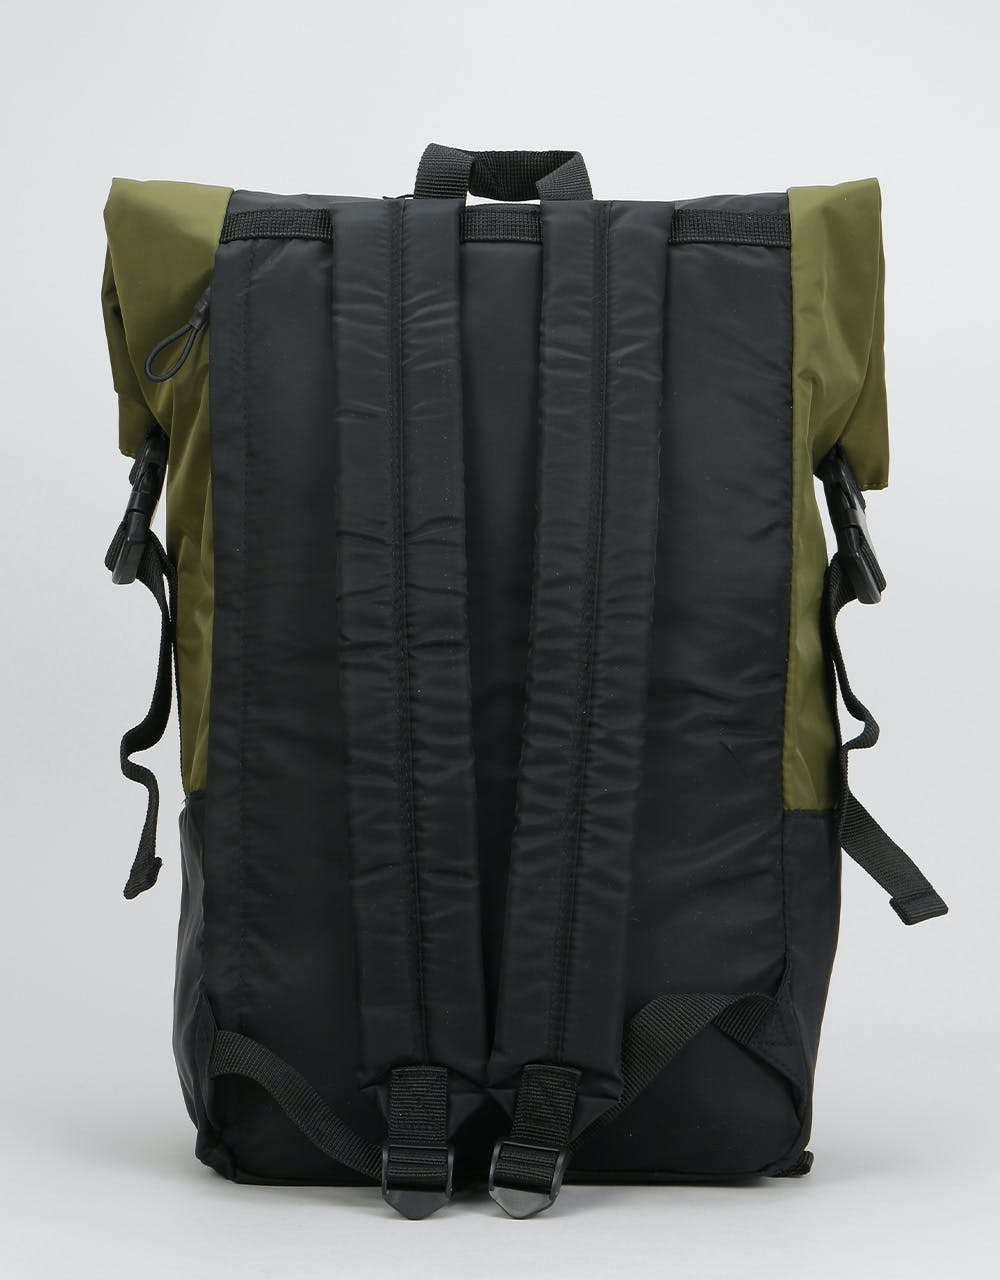 Dickies Dunmore Backpack - Olive/Black